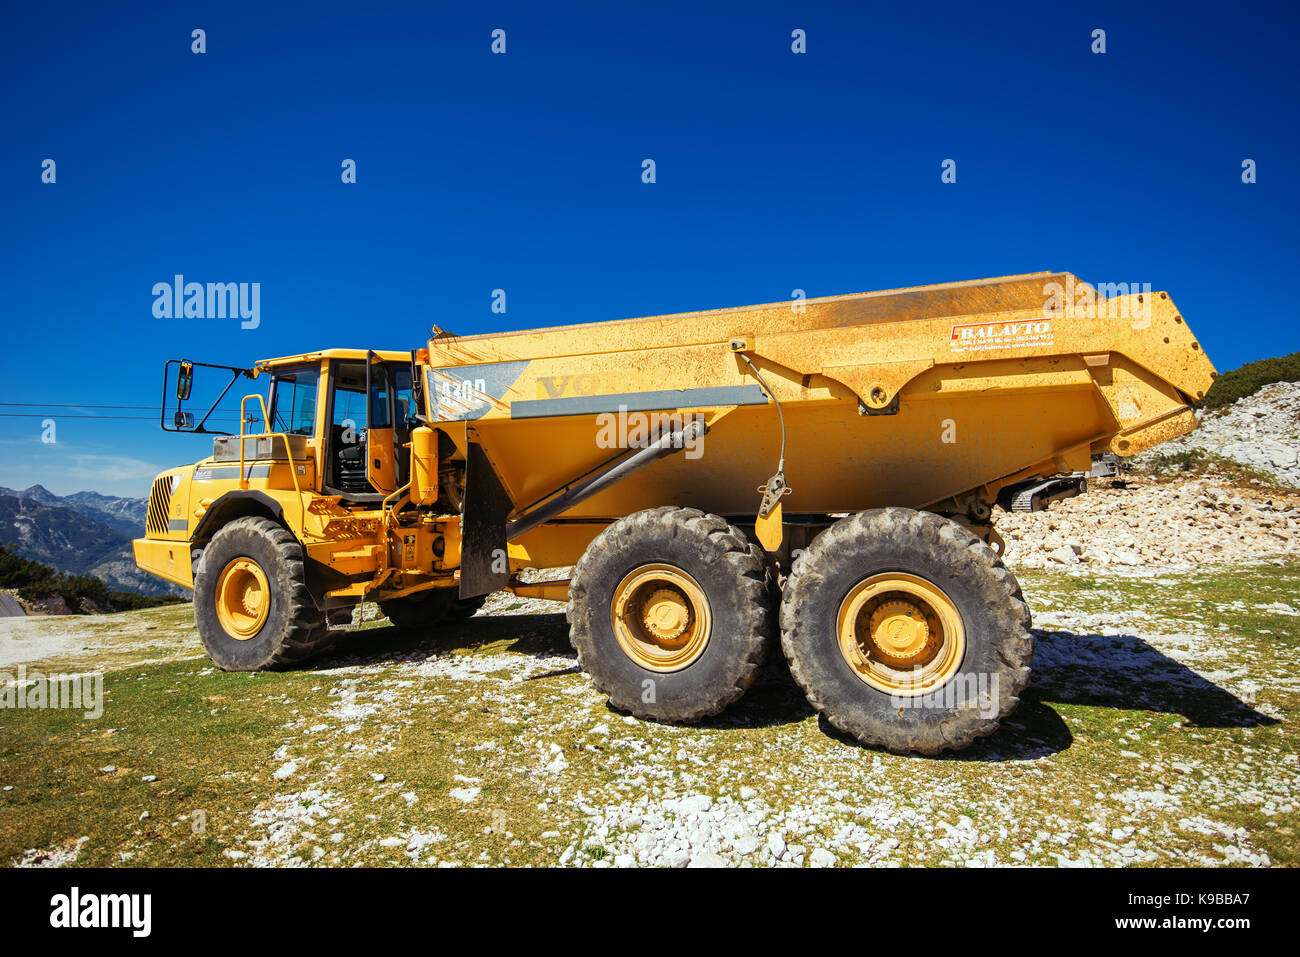 Vogel montaña, Eslovenia - Agosto 30, 2017: Maquinaria de construcción para la trituración de piedra, grandes camiones volvo dumper trabajando en ladera de montaña Foto de stock